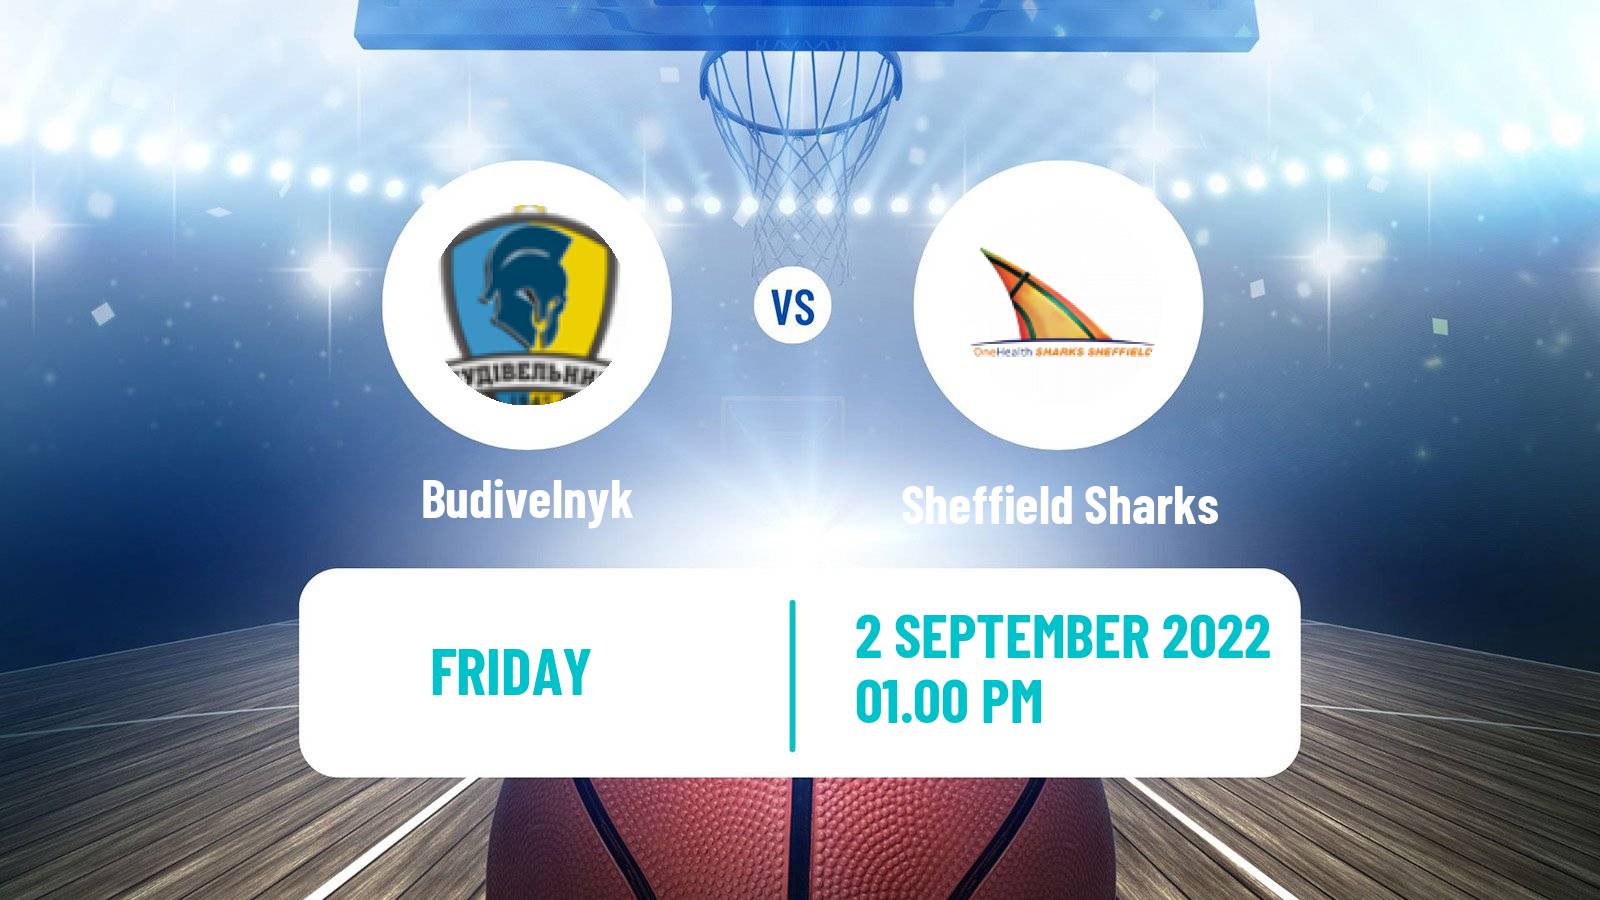 Basketball Club Friendly Basketball Budivelnyk - Sheffield Sharks